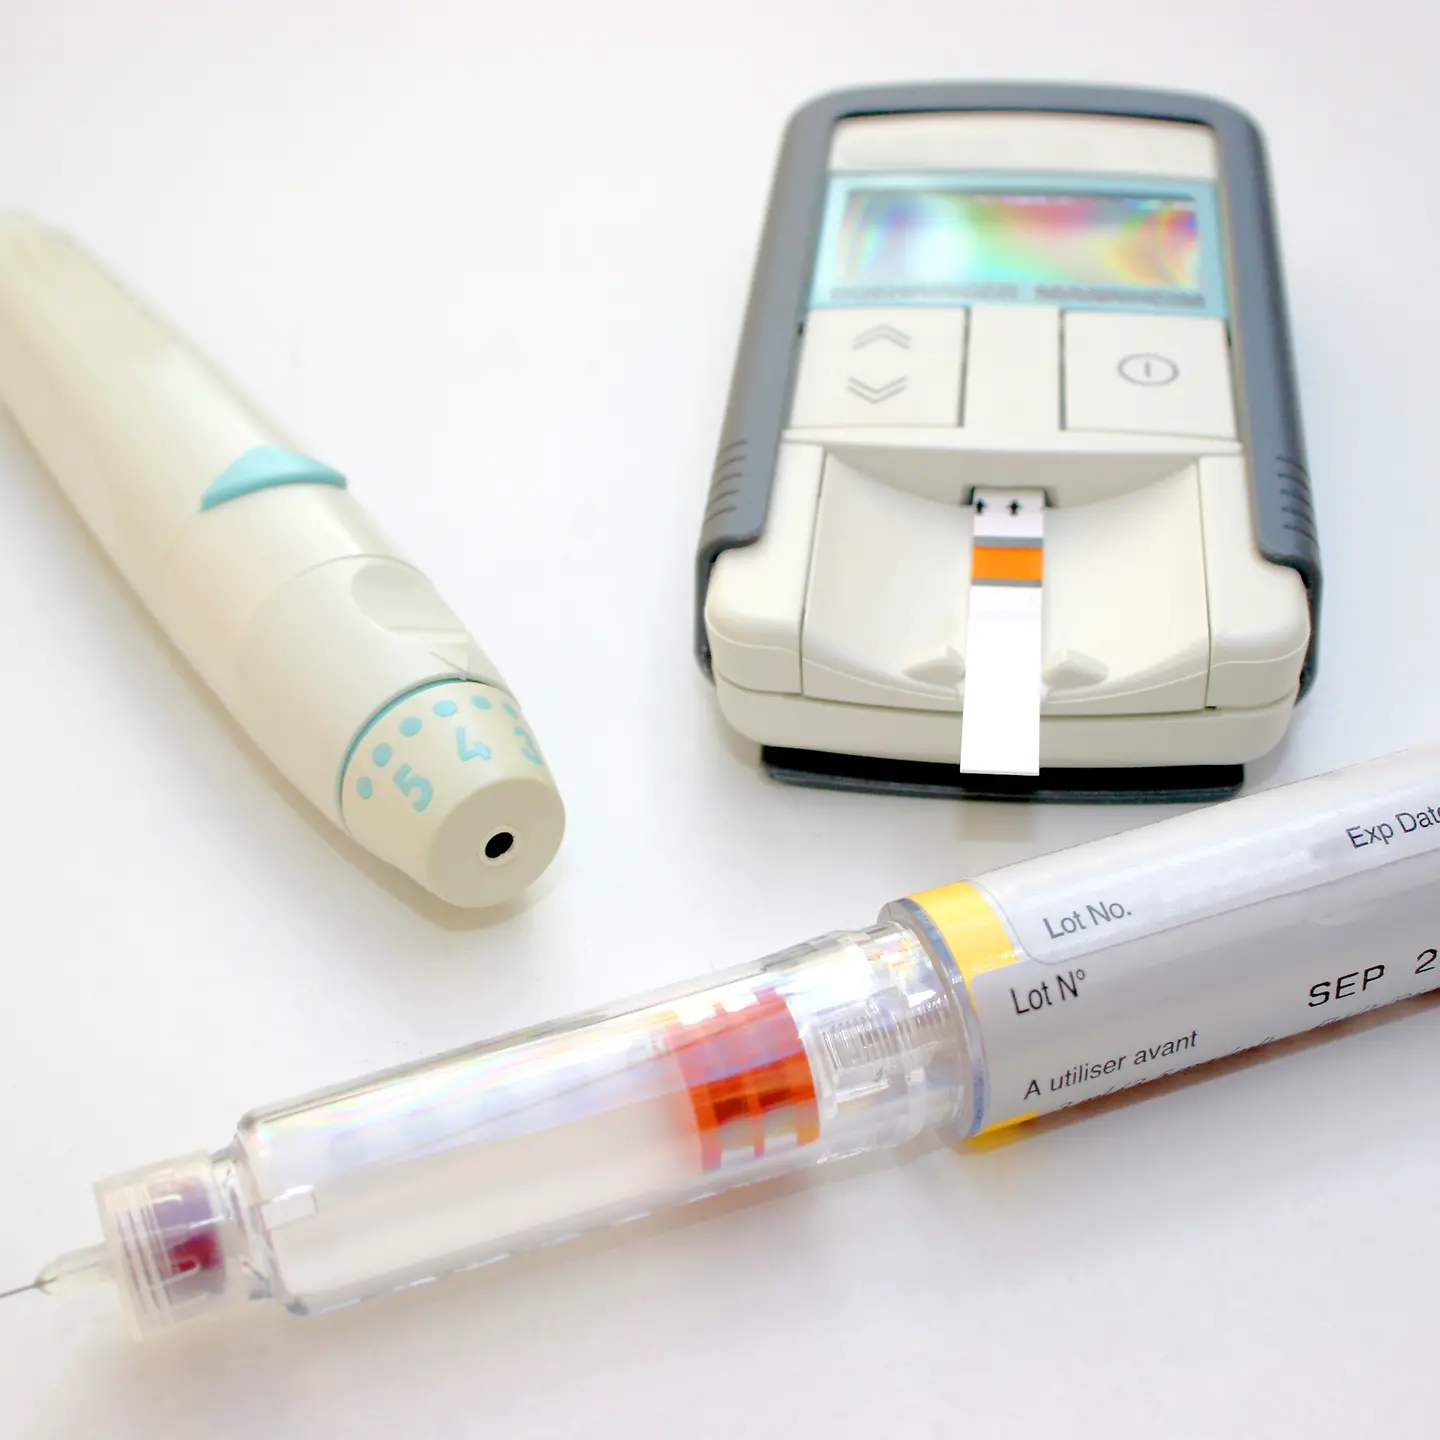 Insulinpen und elektronisches Messgerät mit Teststreifen